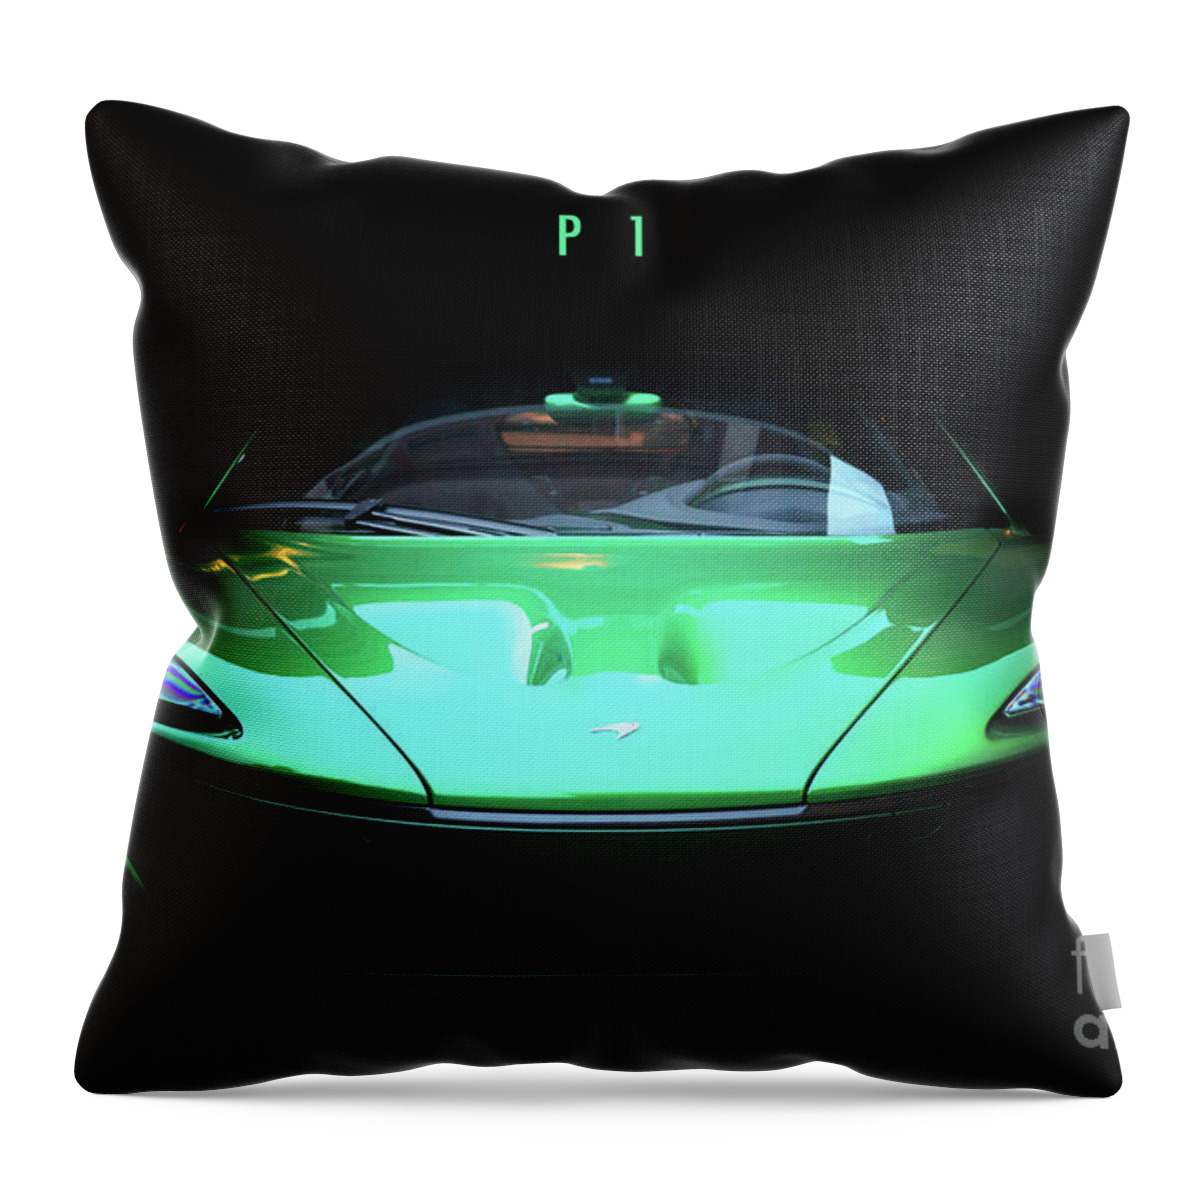 Mclaren Throw Pillow featuring the digital art McLaren P1 by Airpower Art